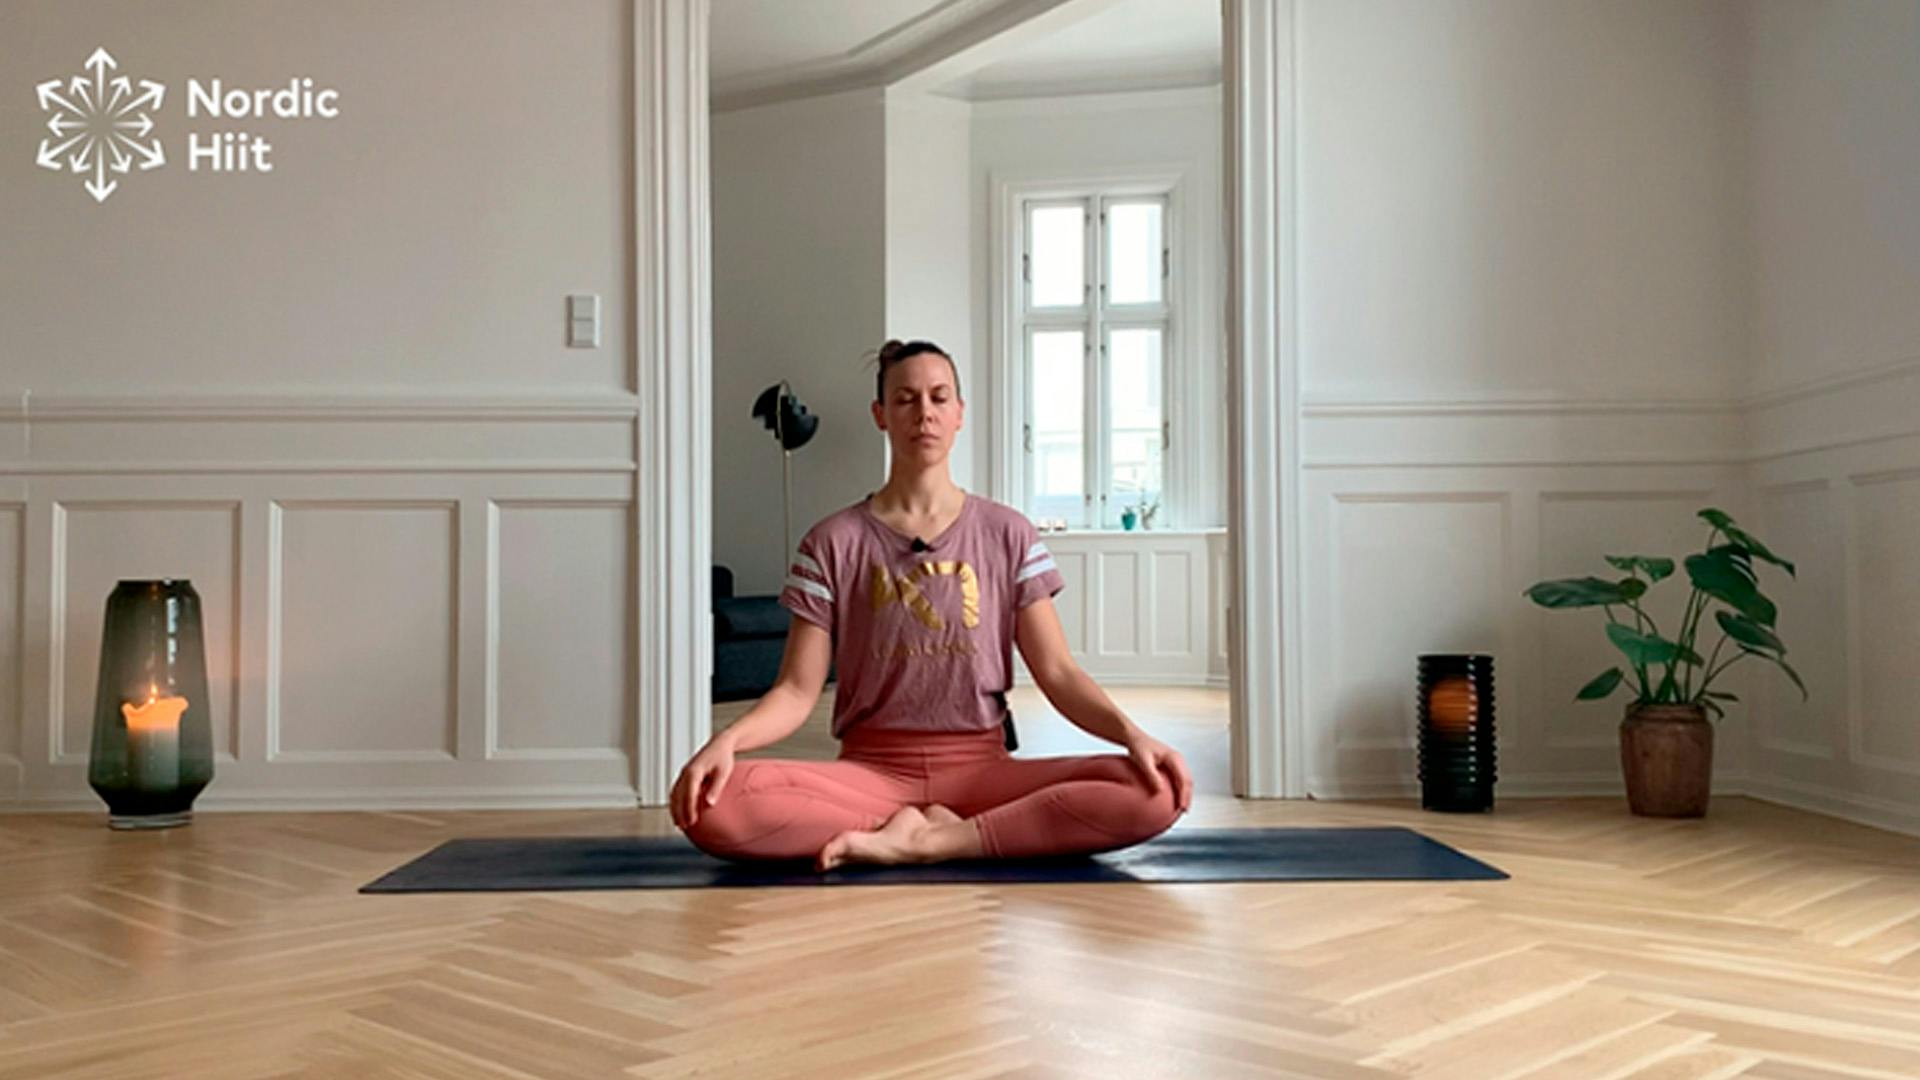 [VIDEO] Få en god start på dagen med yoga og Kari Traa